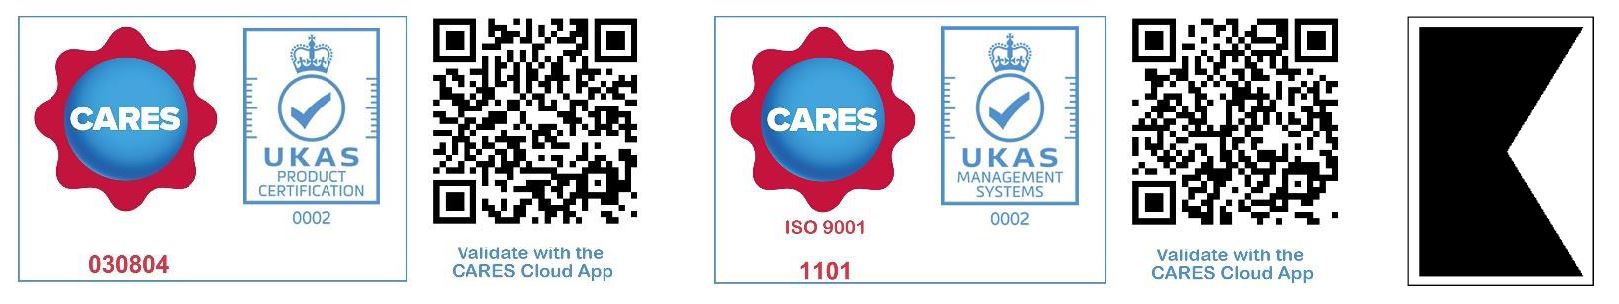 UK CARES Produkt Certification